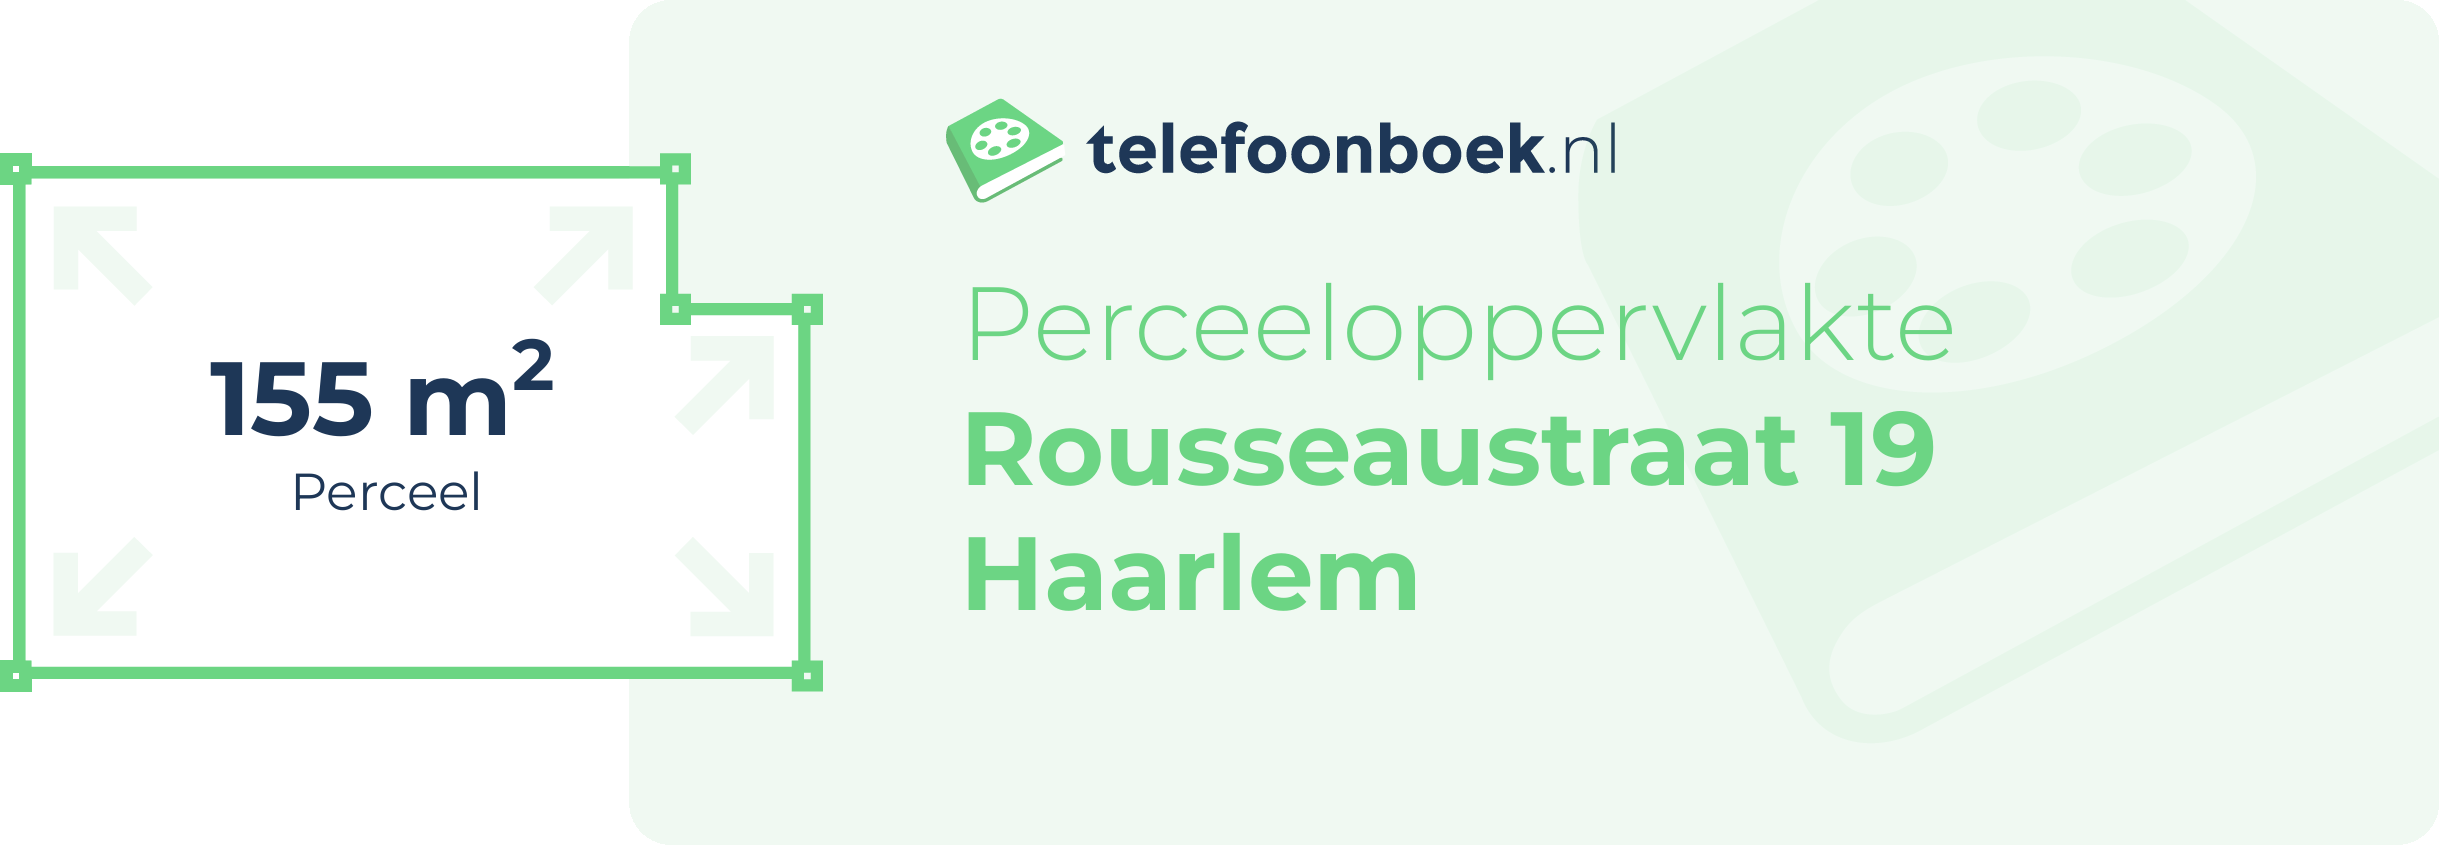 Perceeloppervlakte Rousseaustraat 19 Haarlem